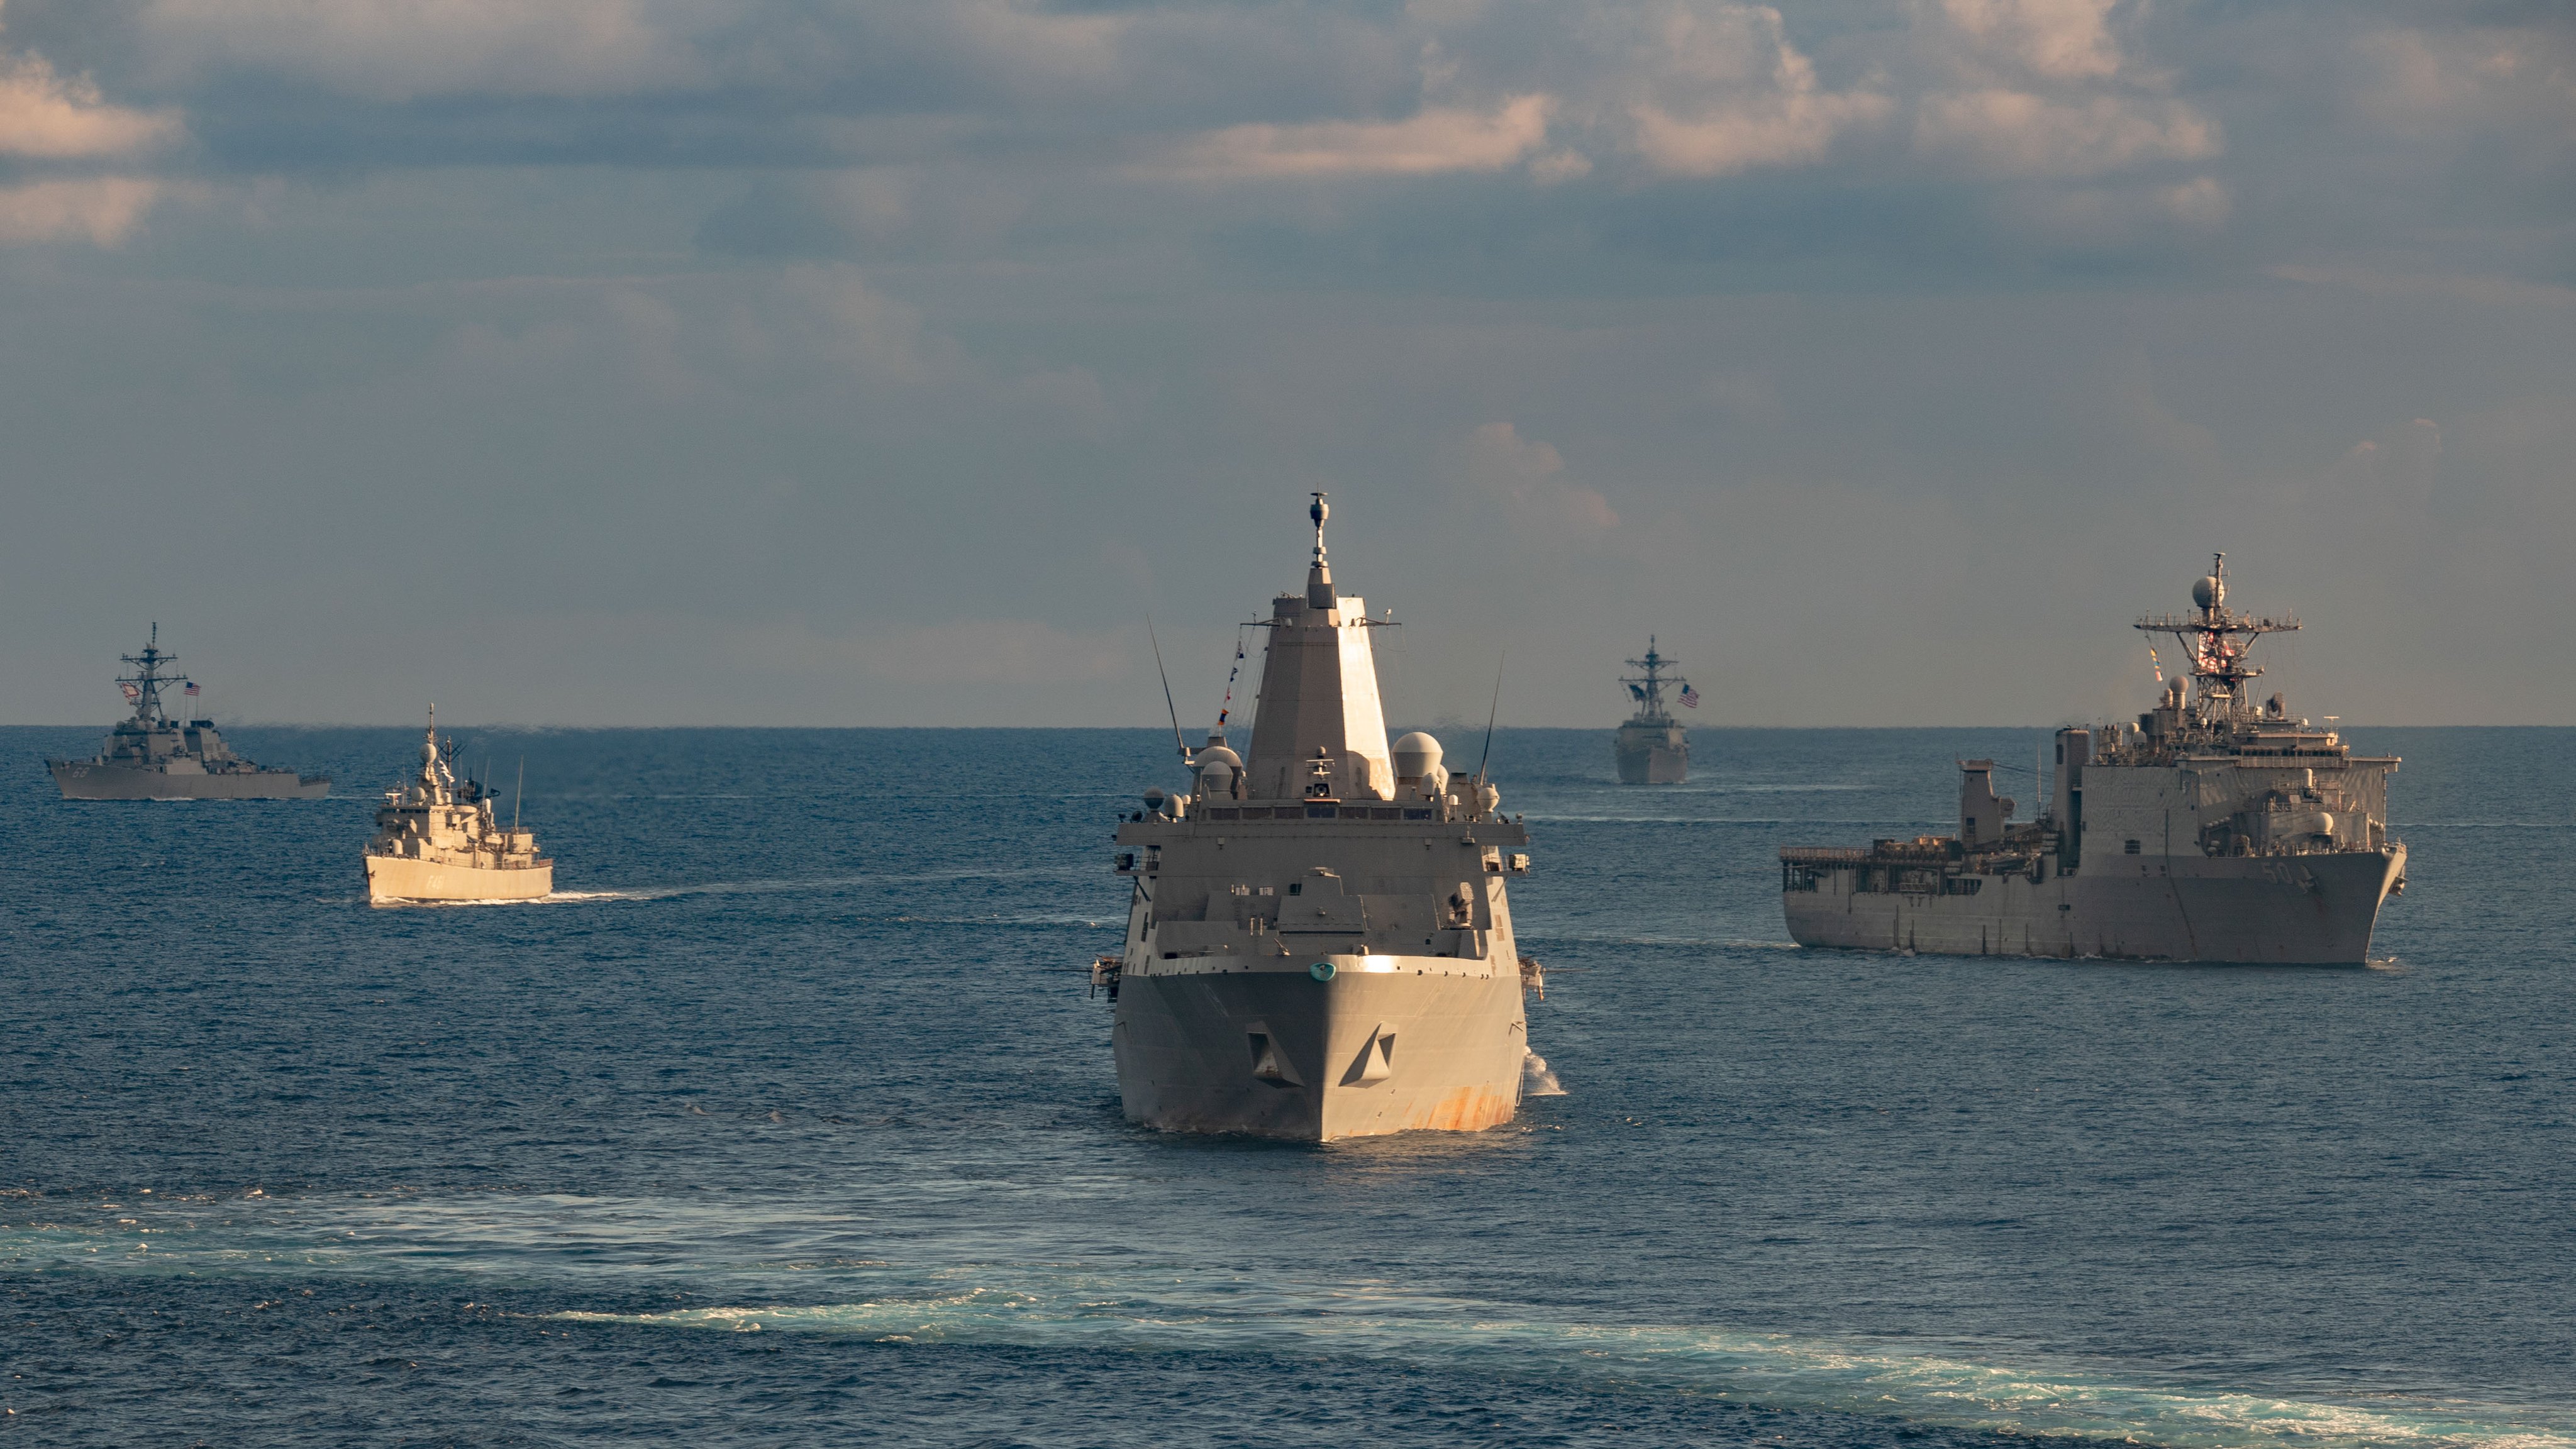 البحرية الأمريكية تكشف تفاصيل مواجهات في البحر الأحمر انتهت لصالح قوات صنعاء